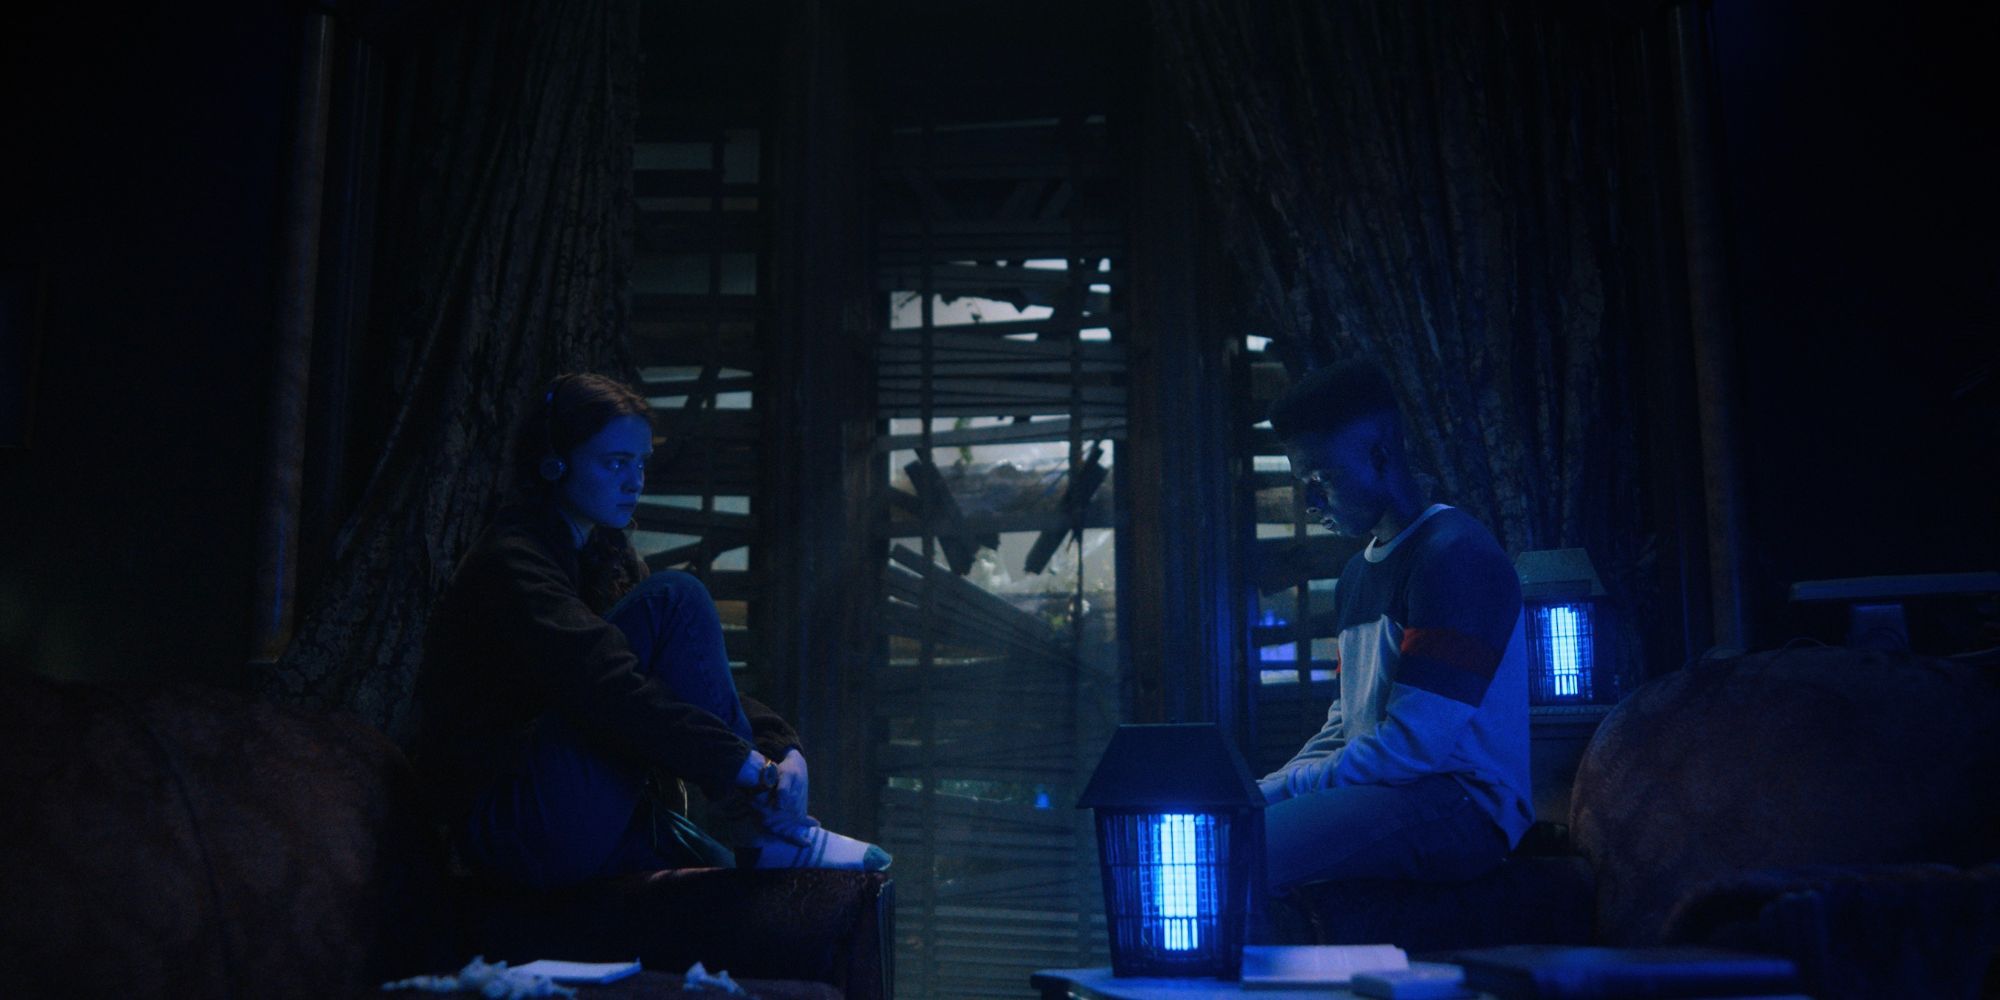 Sadie Sink as Max and Caleb McLaughlin as Lucas in Stranger Things season 4 sitting in a dark room